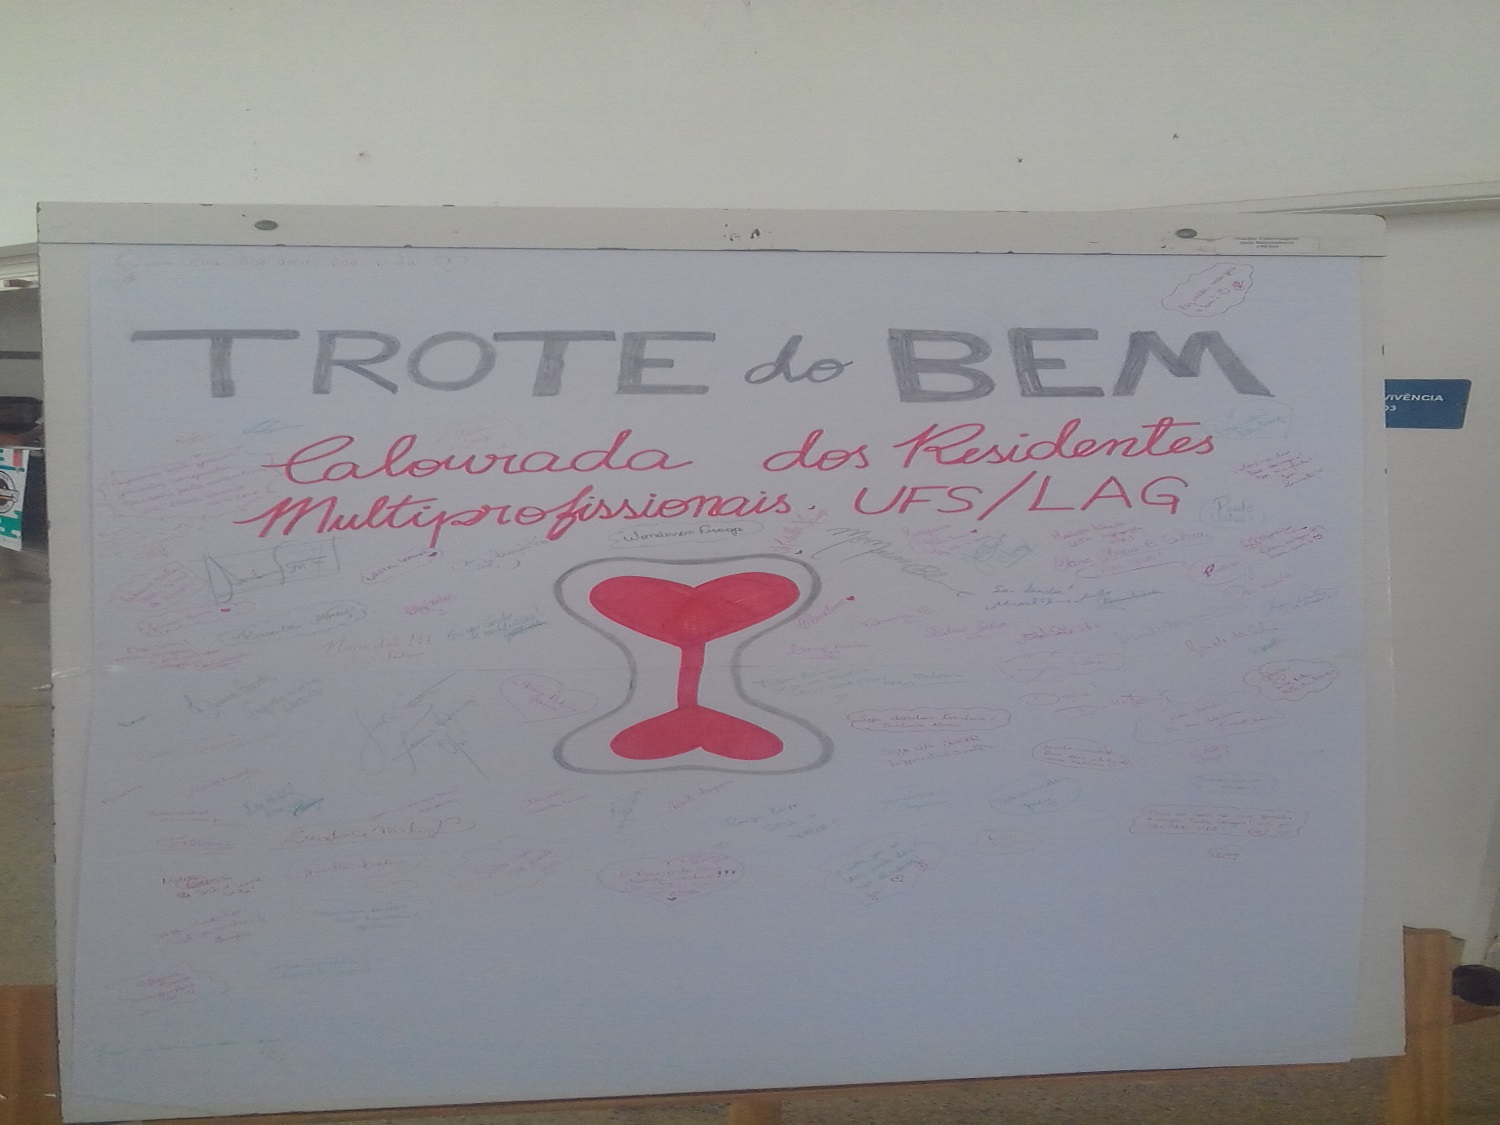 Cartaz do "Trote do Bem" com assinatura dos voluntários